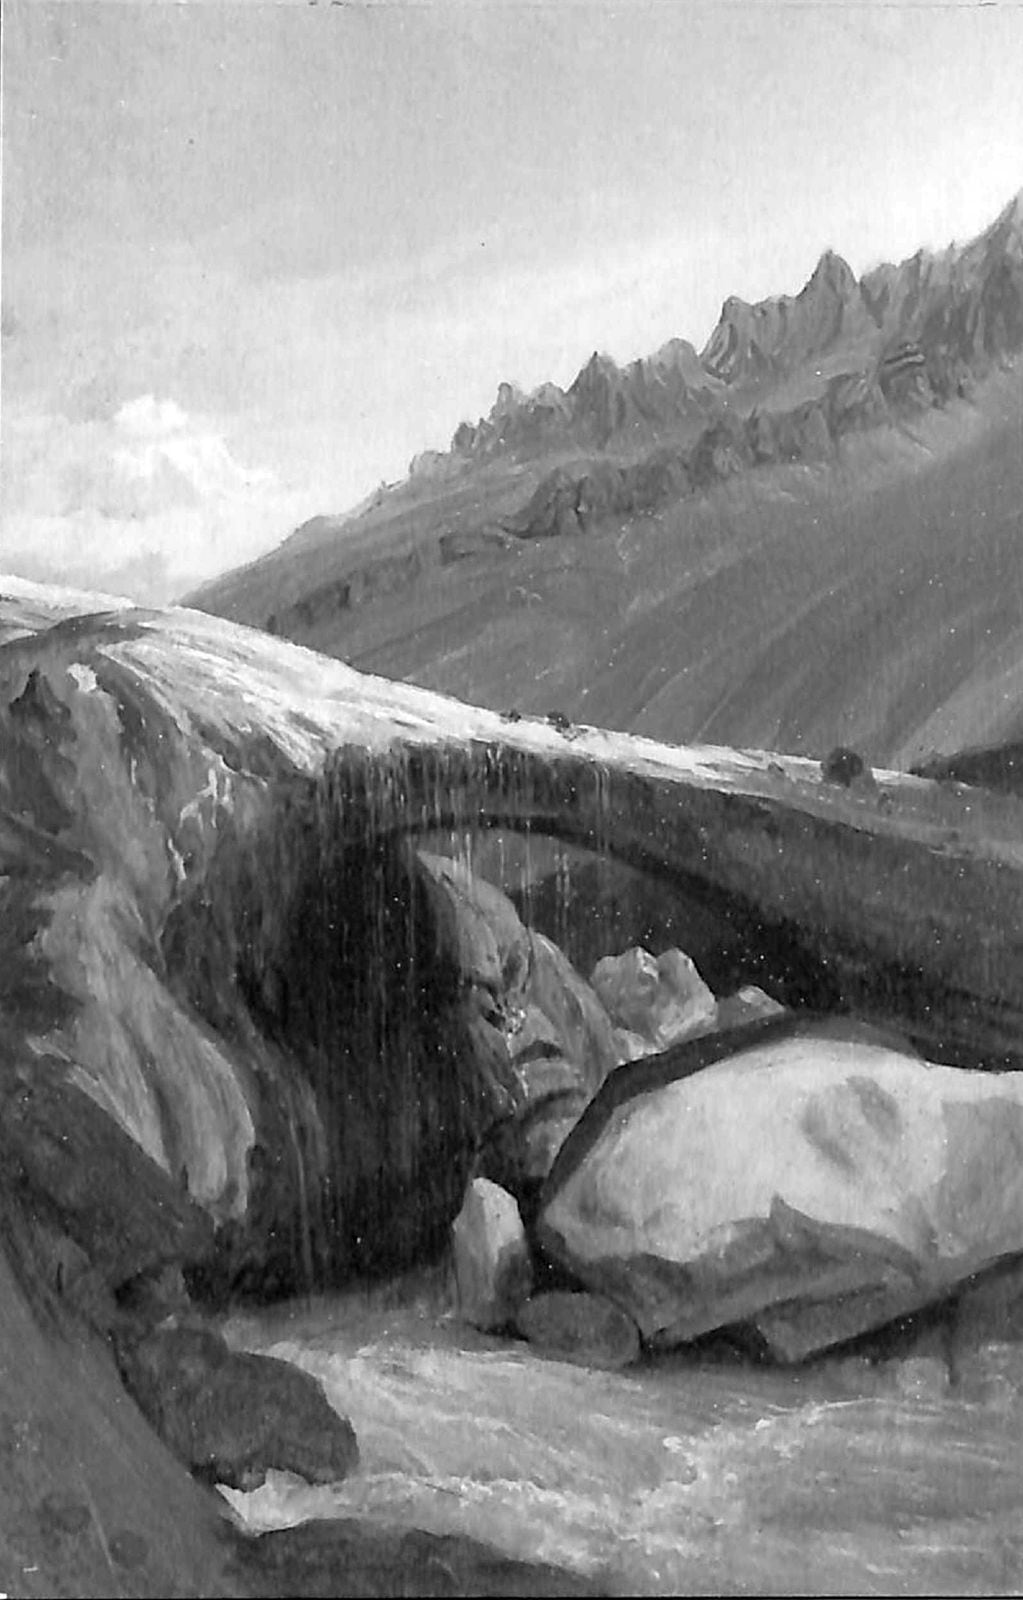 Roberto Krause. “El Puente de Inca”. Óleo sobre cartón, 1838. Fuente: Biblioteca Nacional Digital de Chile.